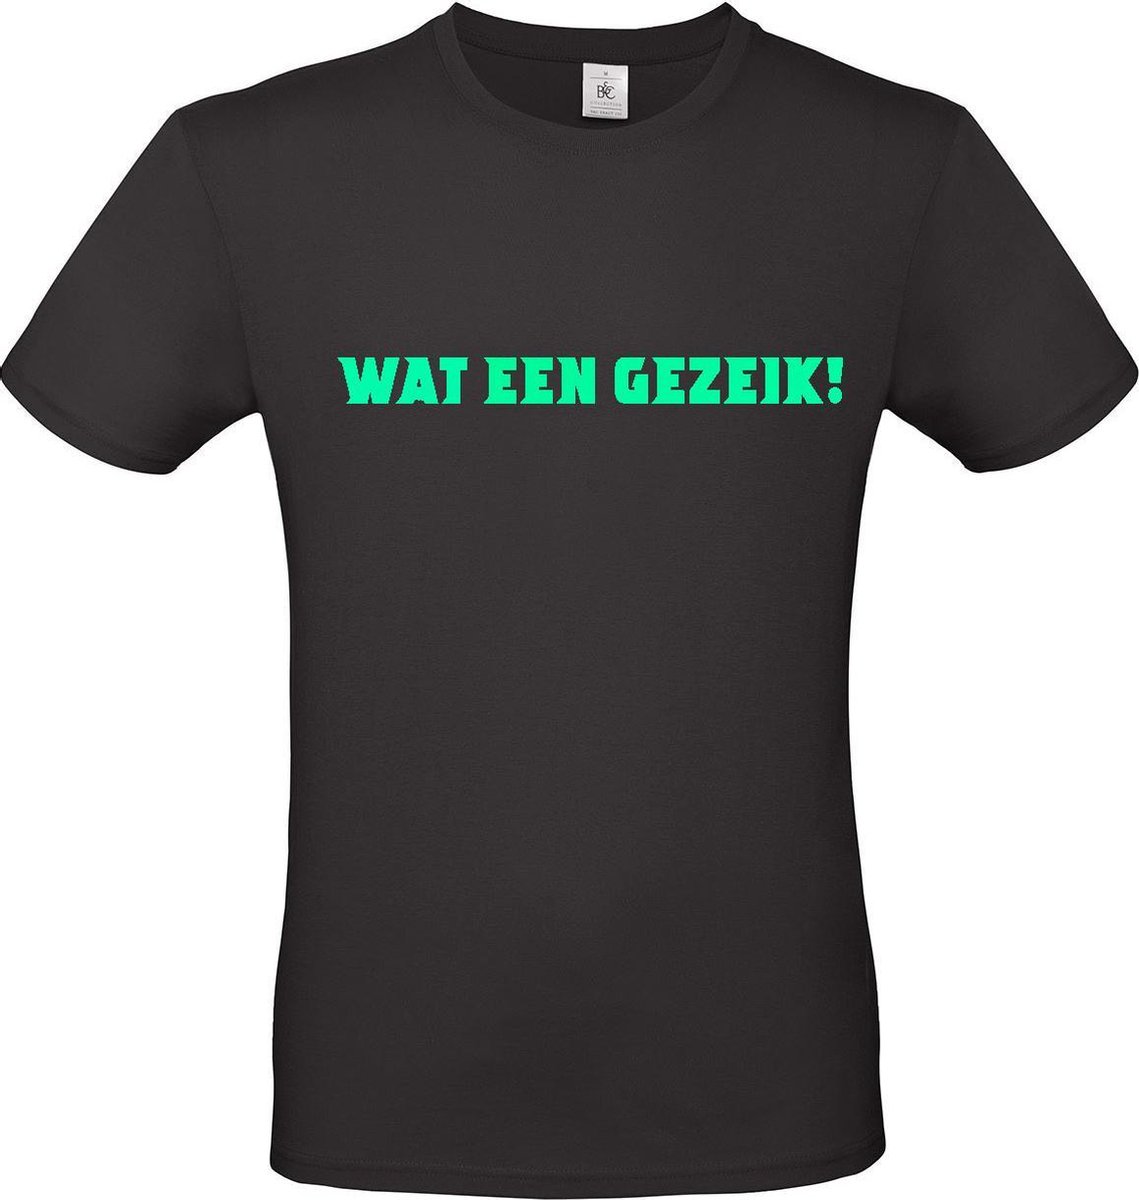 T-shirt met opdruk “Wat een gezeik”, Zwart T-shirt met fluor groene opdruk. Ken je hem uit Chateau Meiland?